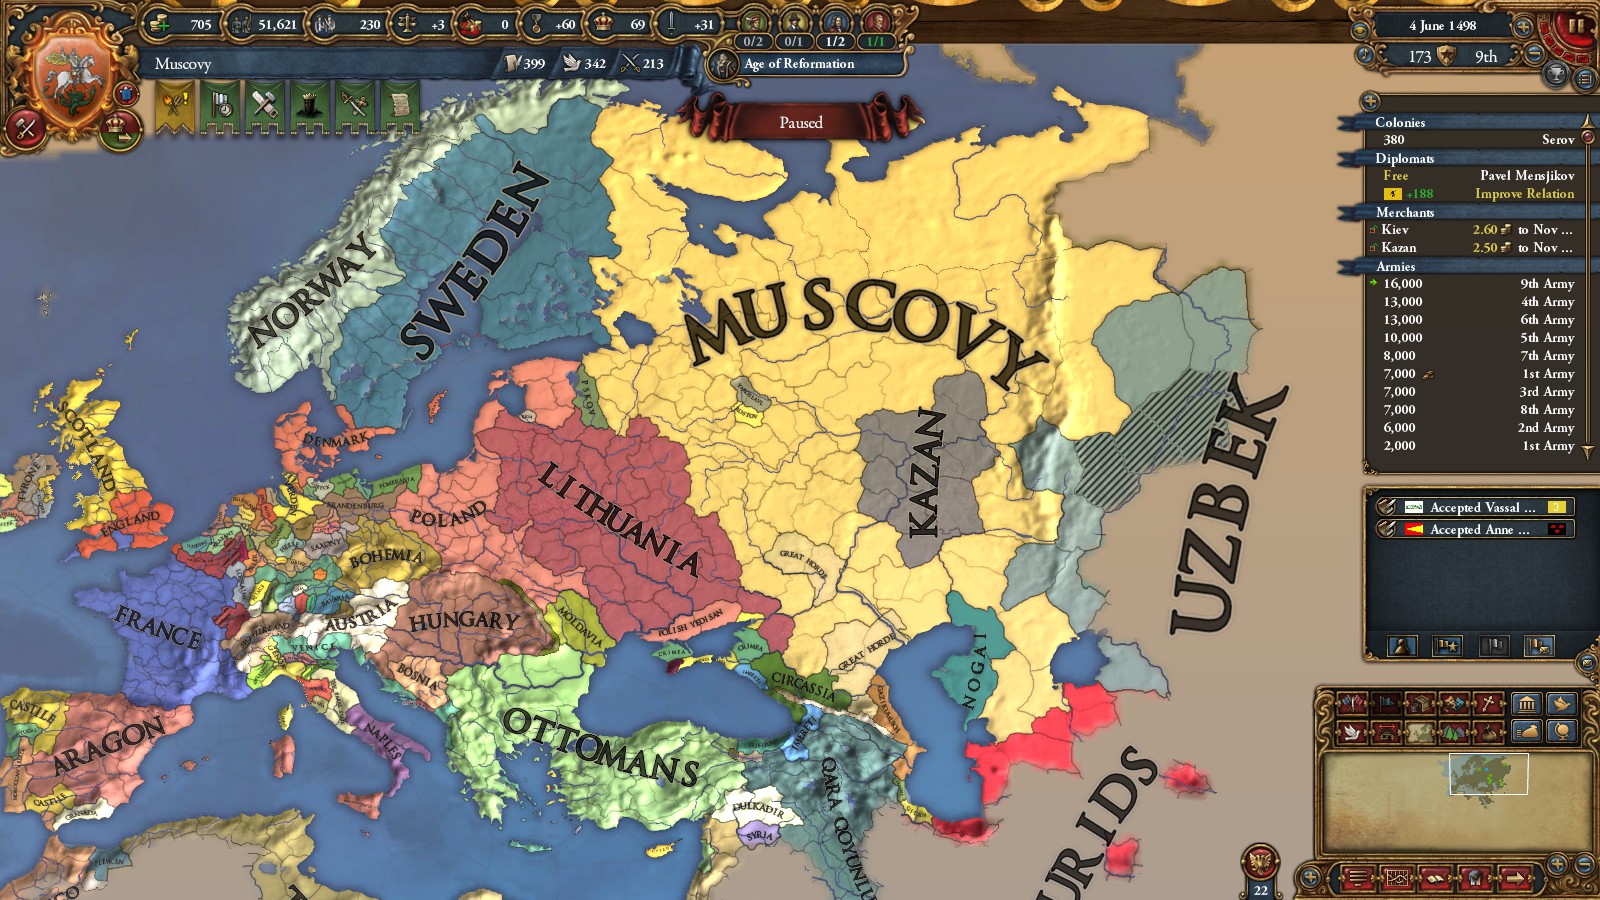 europa universalis 4 muscovy